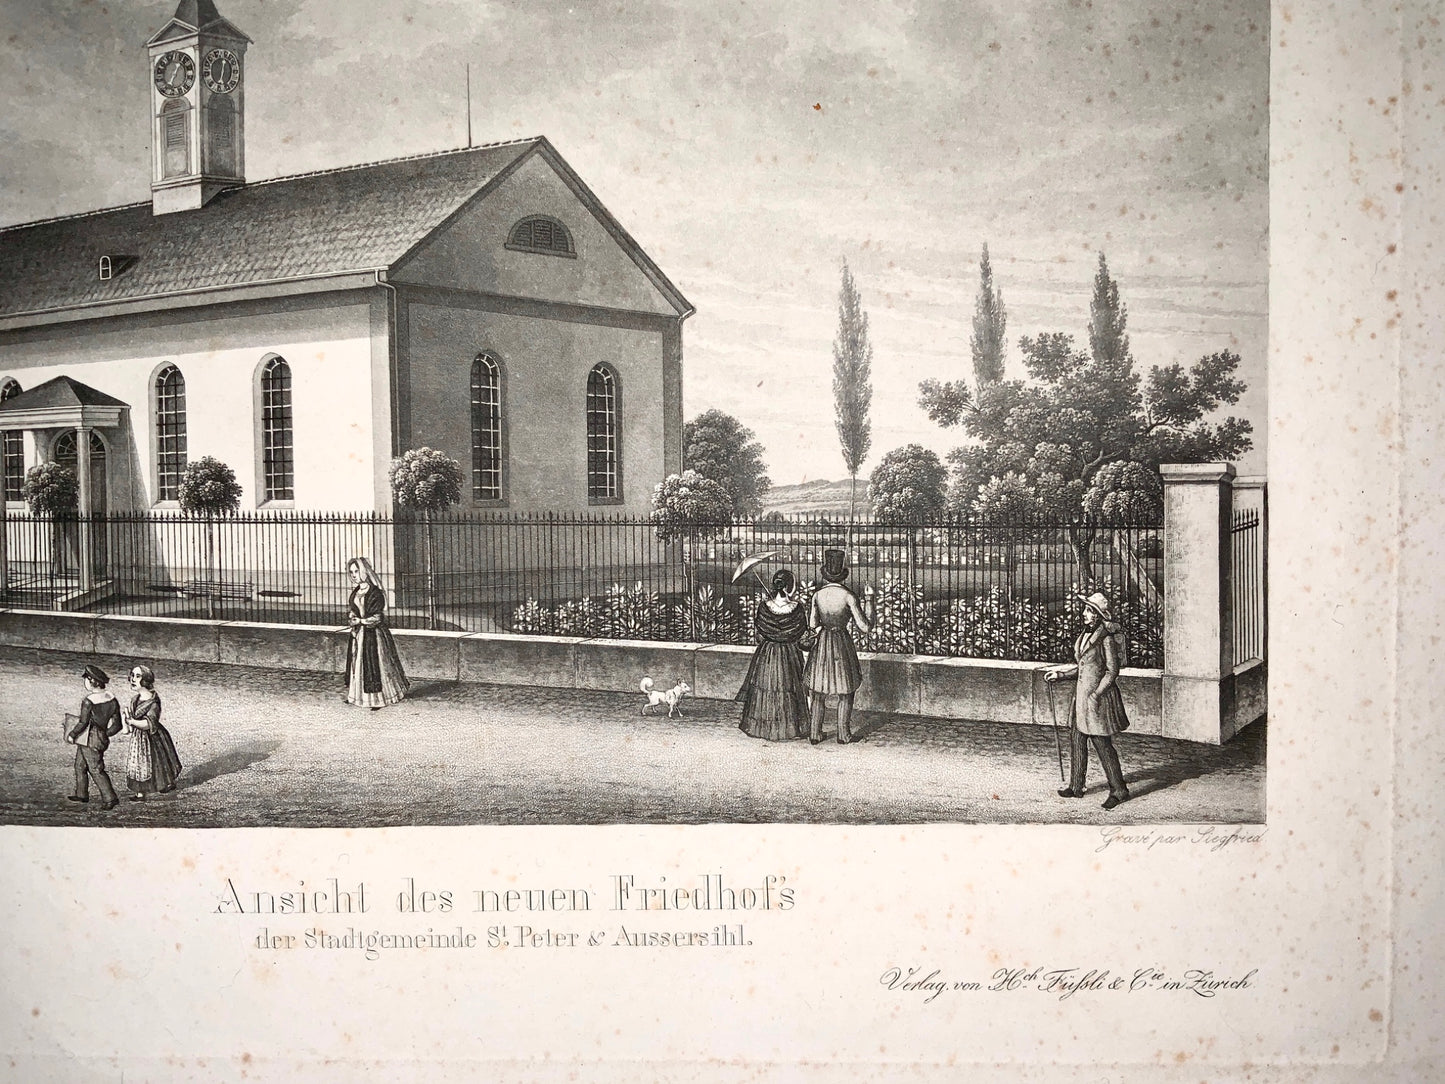 1840 Siegfried; Wydler ZURICH Switzerland St. Peter & Aussersihl large aquatint